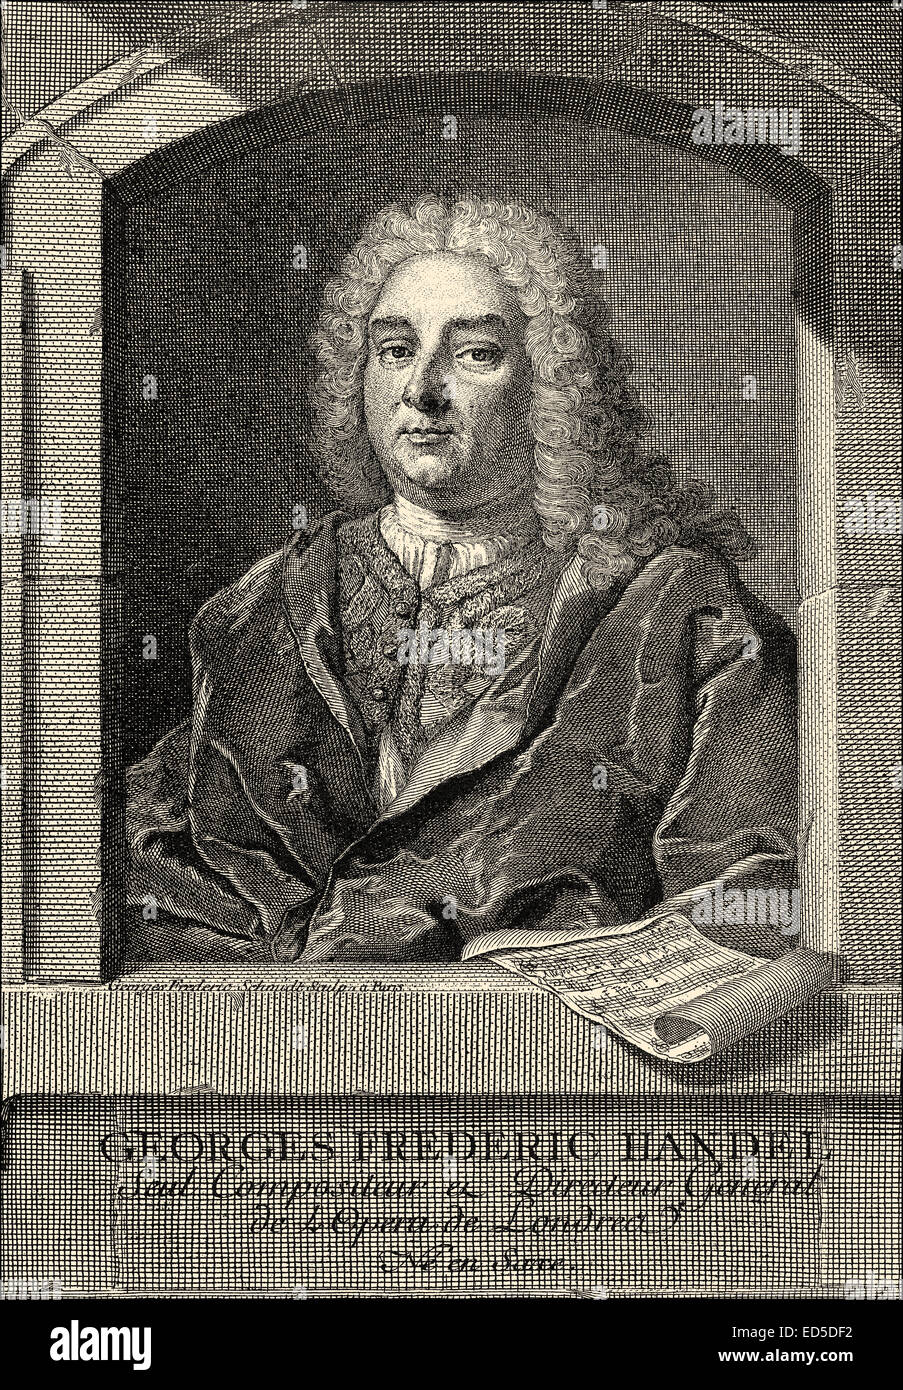 George Frederick Handel o George Frideric Handel, 1685 - 1759, un compositor germano-británico del Barroco, Georg Friedrich Händel Foto de stock